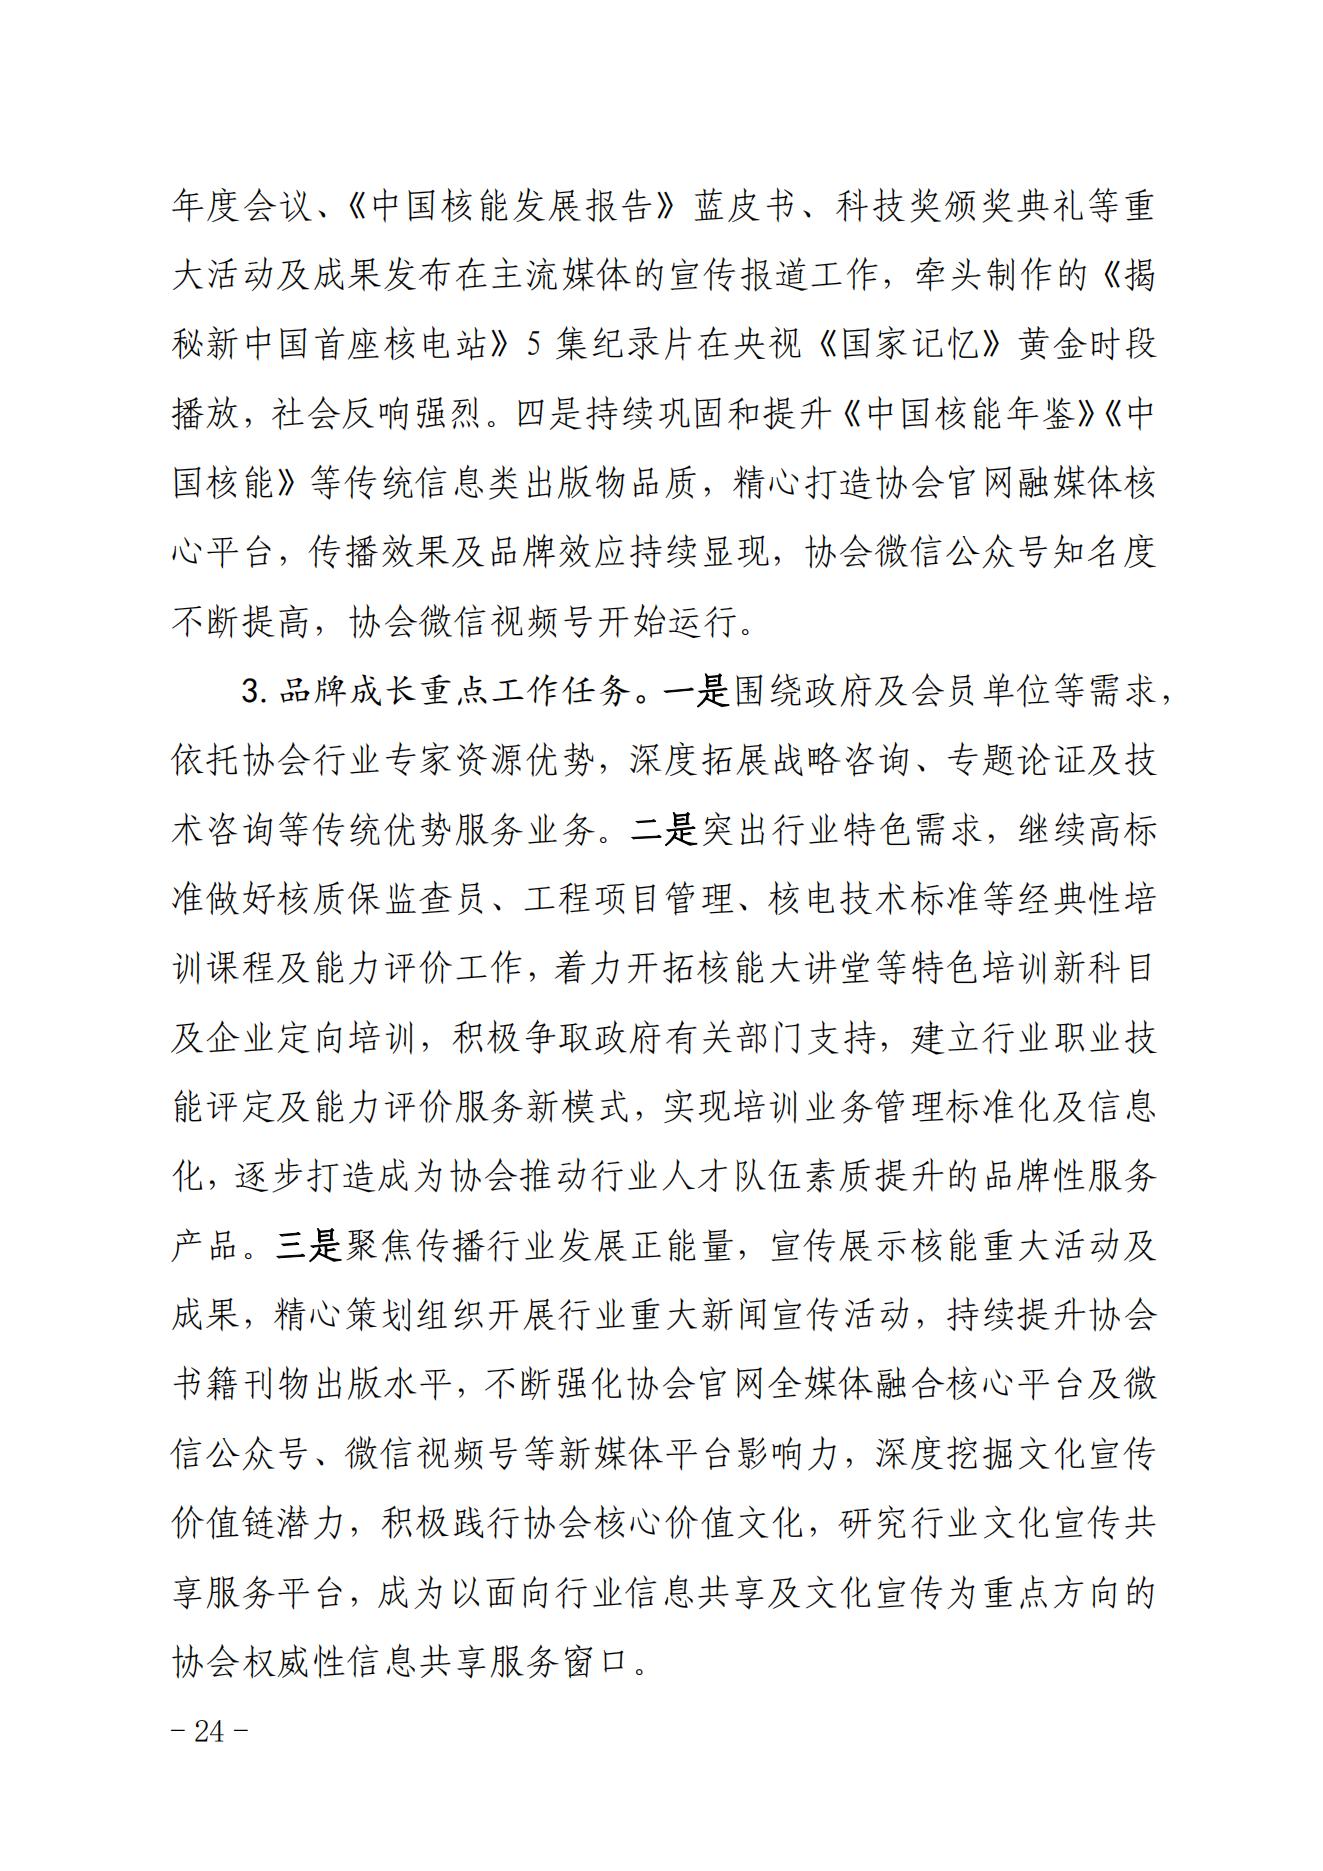 关于印发《中国核能行业协会“品牌协会成长计划”实施方案》的通知_23.jpg